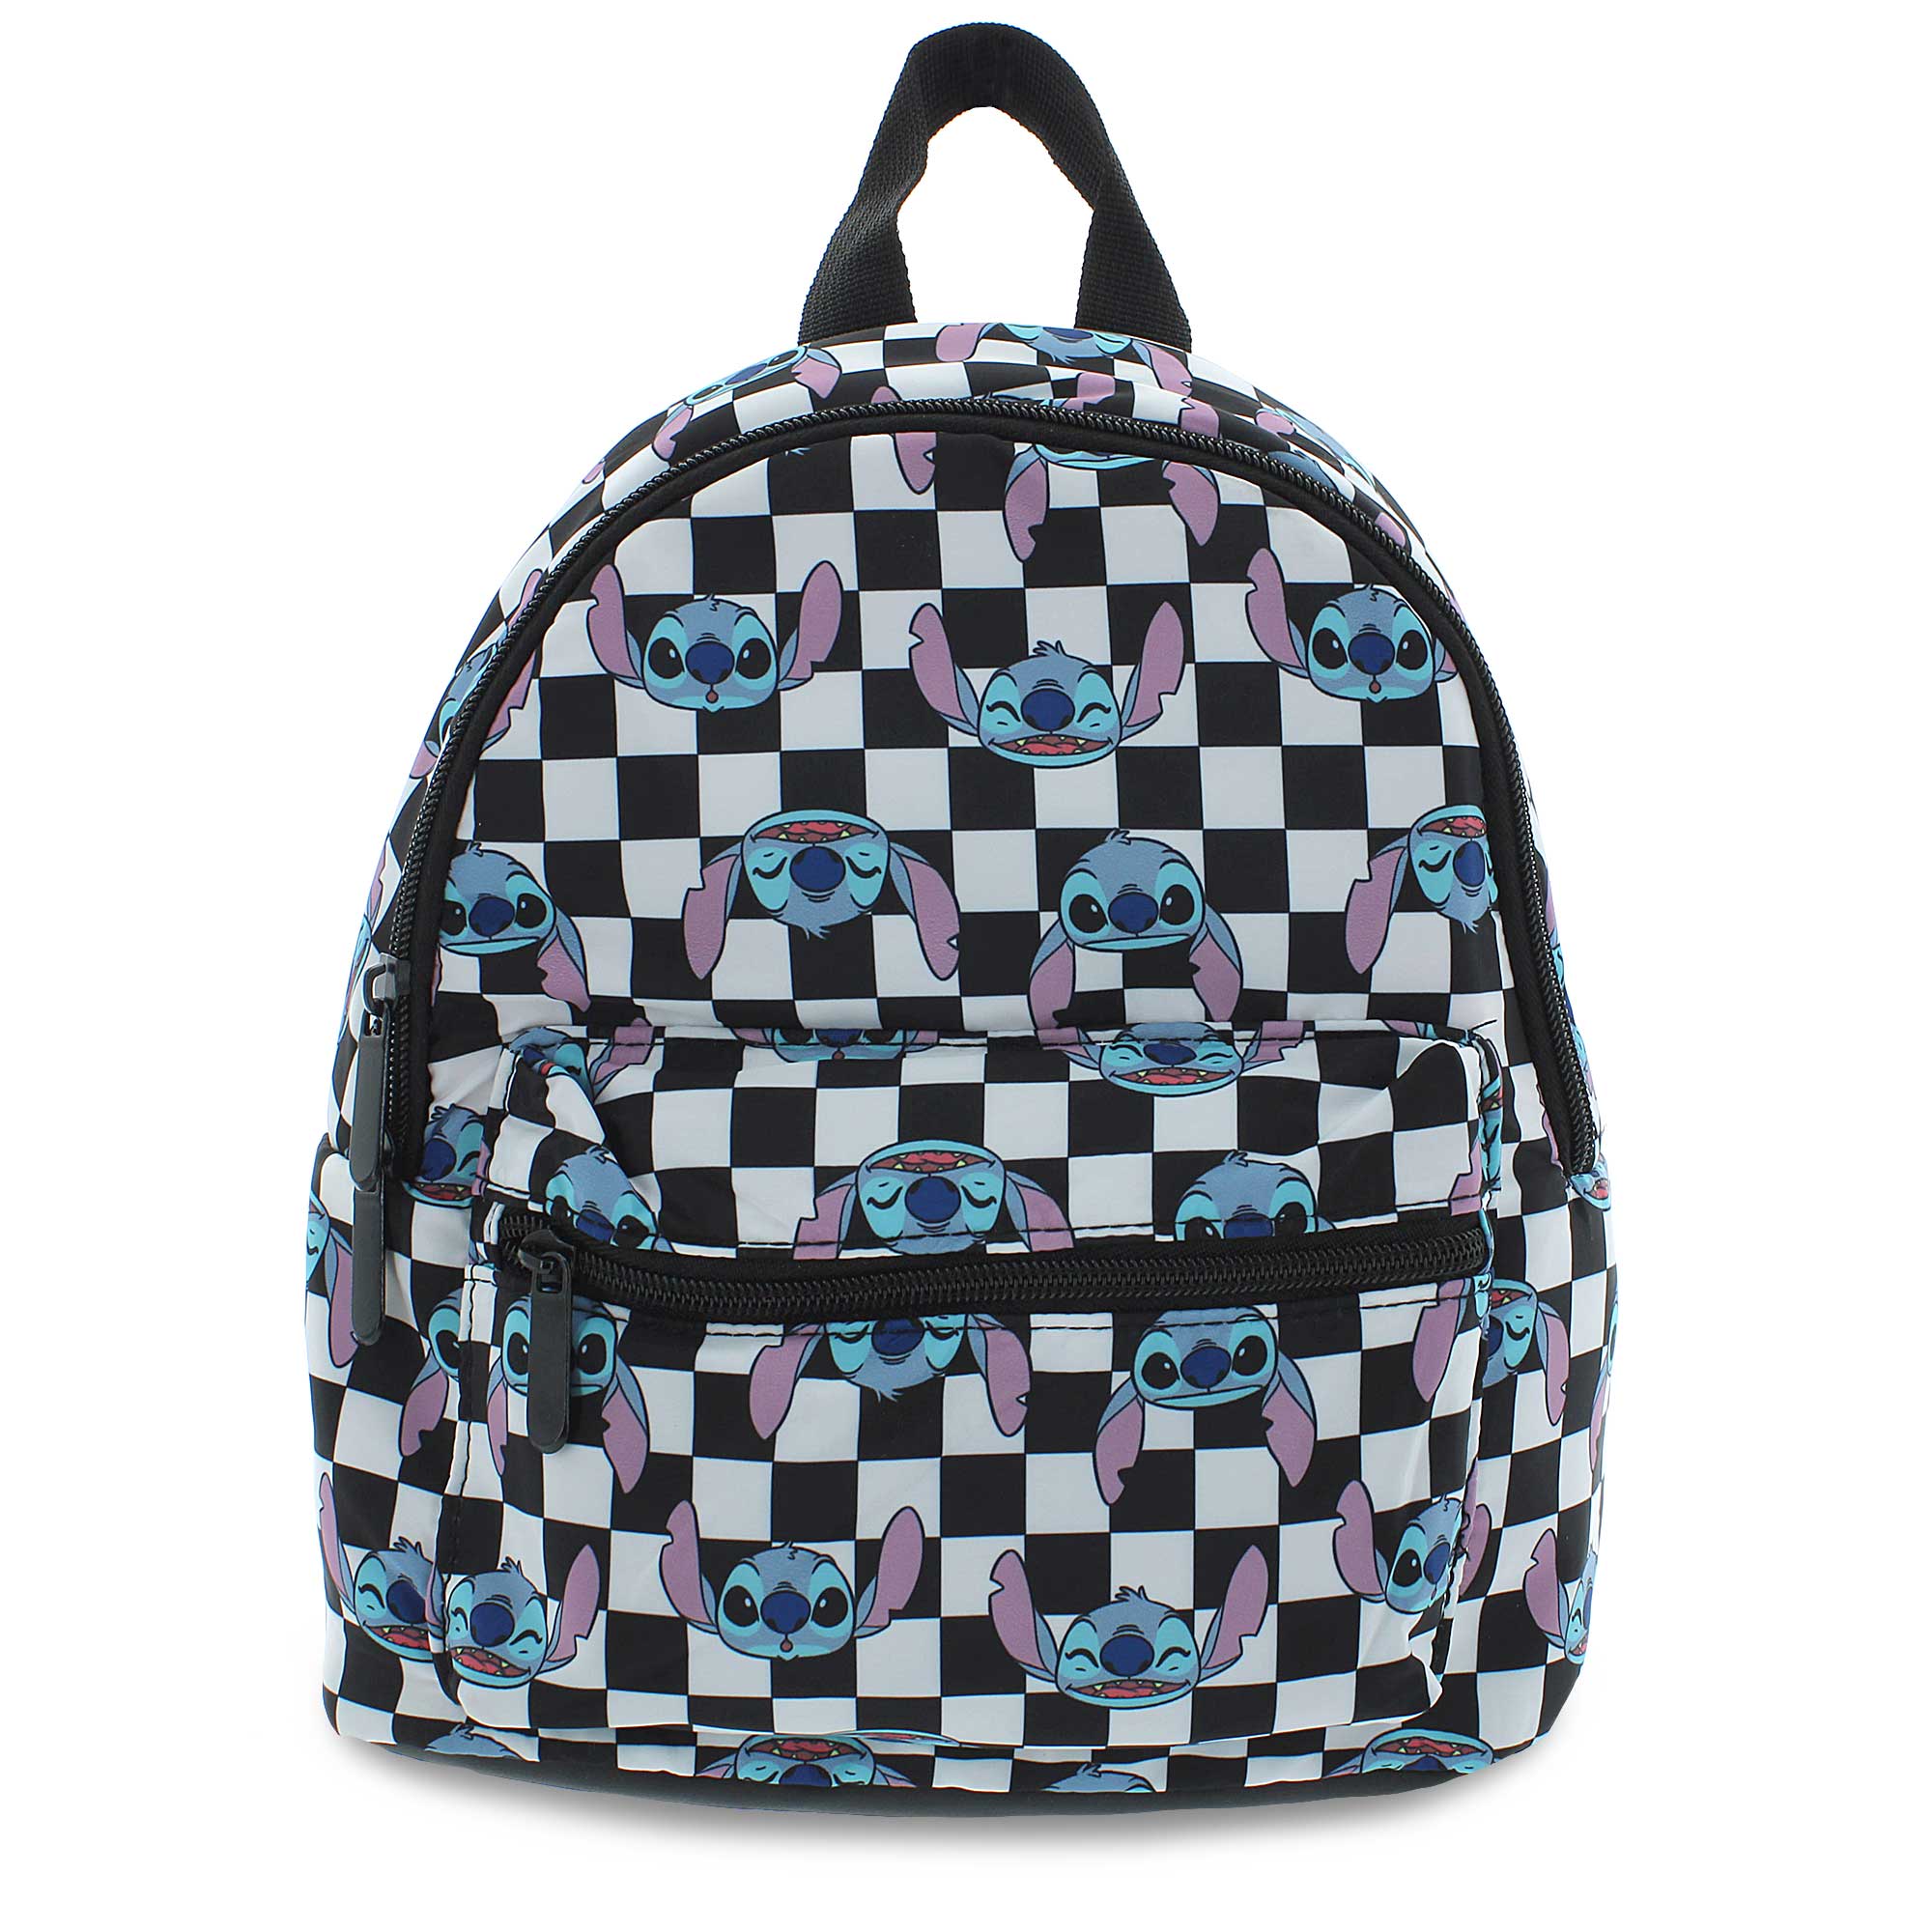 Bioworld Disney Stitch MINI Backpack Black White Checkered 11 x 9